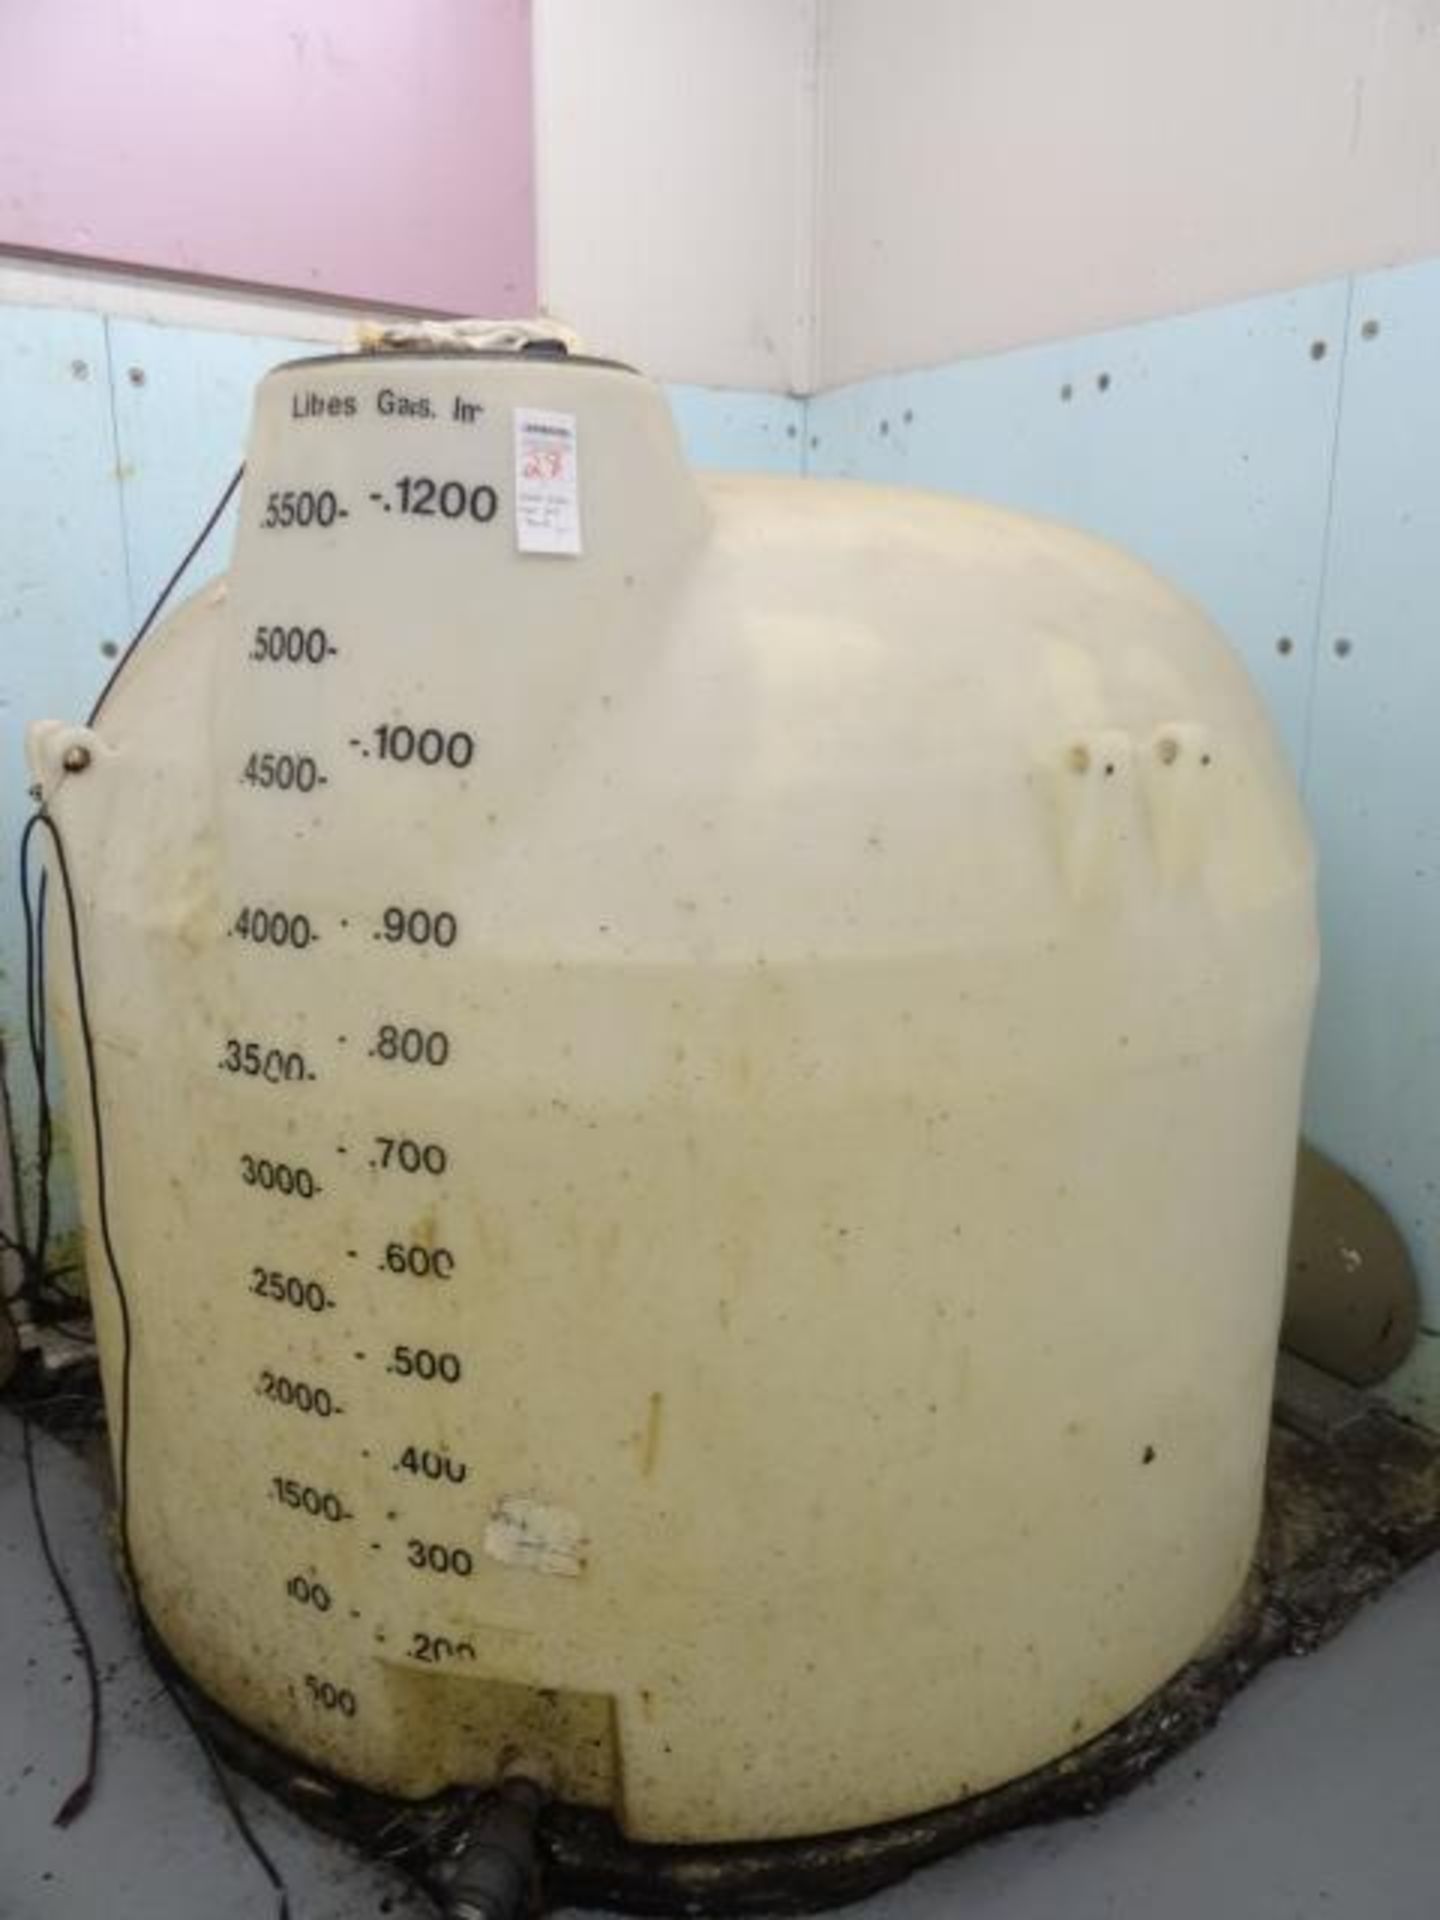 1x, 5,500 Litre / 1,200 Gallon Bulk Oil Storage Tank